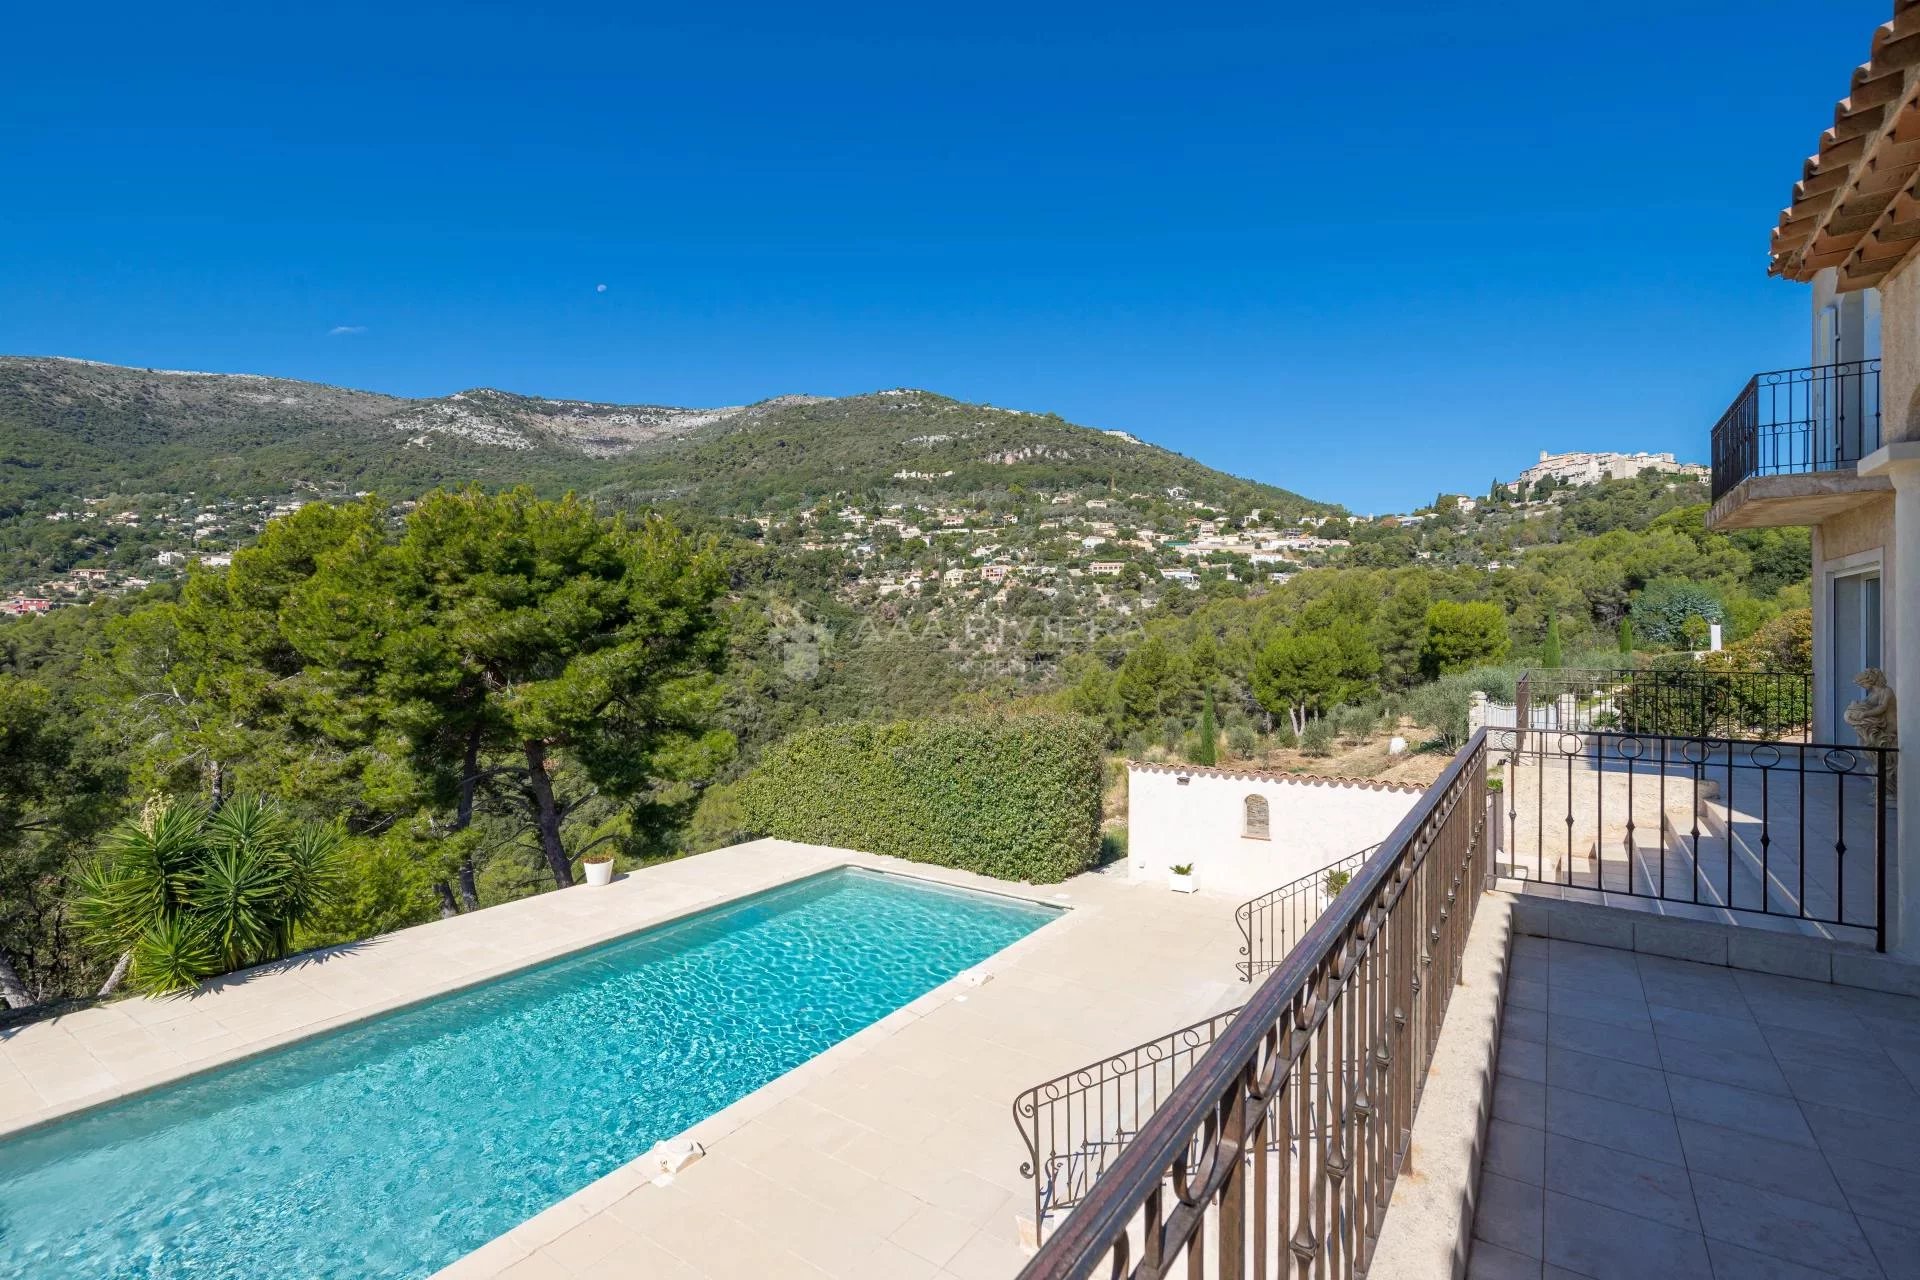 UNDER OFFER -CARROS - Nyere villa med 6 soverom, svømmebasseng og panorama utsikt i Nice bakland